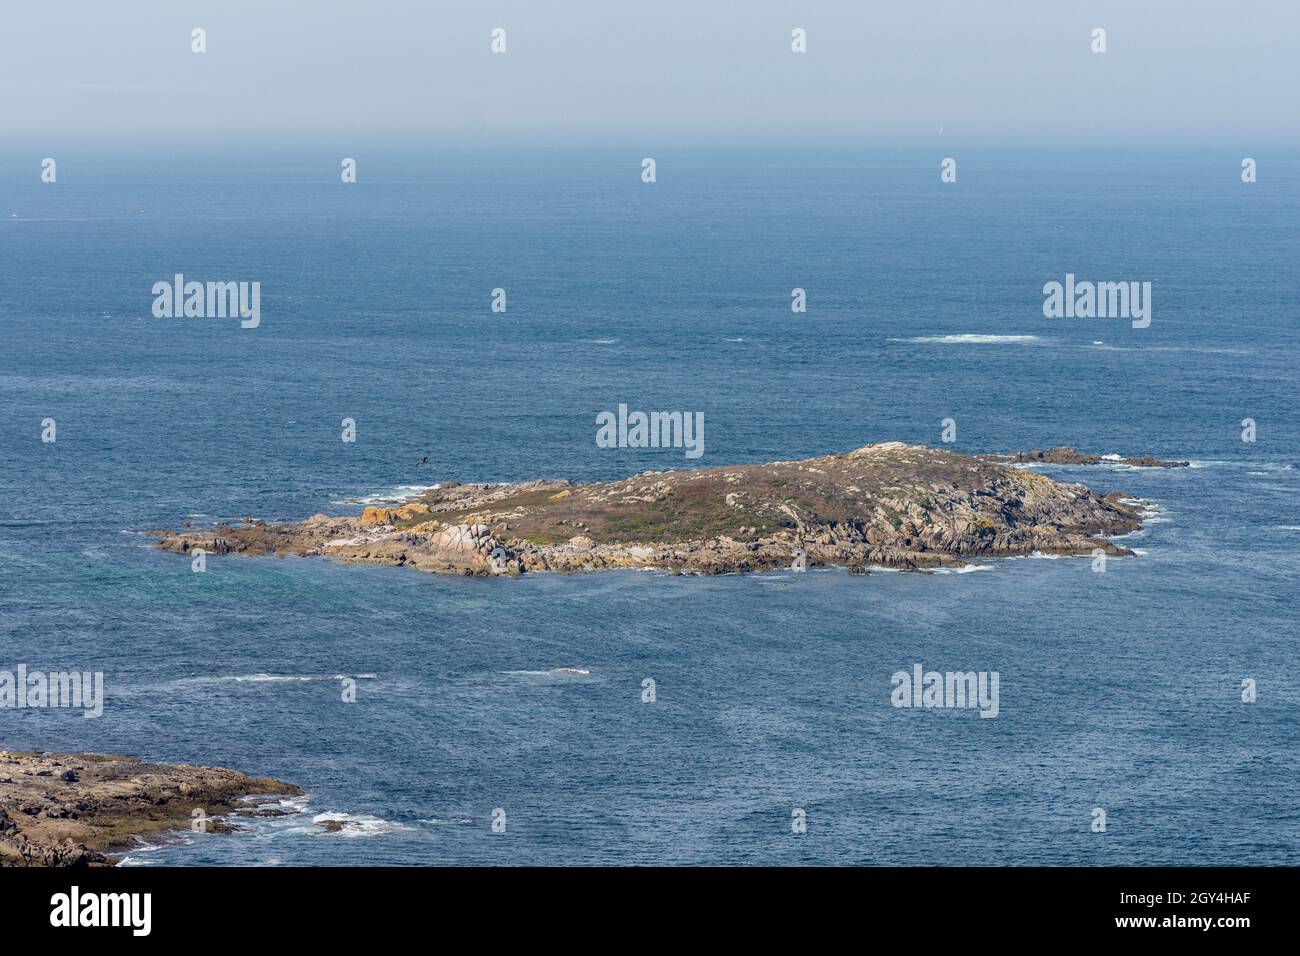 Cíes-Inseln, drei Inseln, die die atlantischen Inseln bilden, Nationalpark, Mündung der Ria de Vigo, Galizien, Spanien Stockfoto